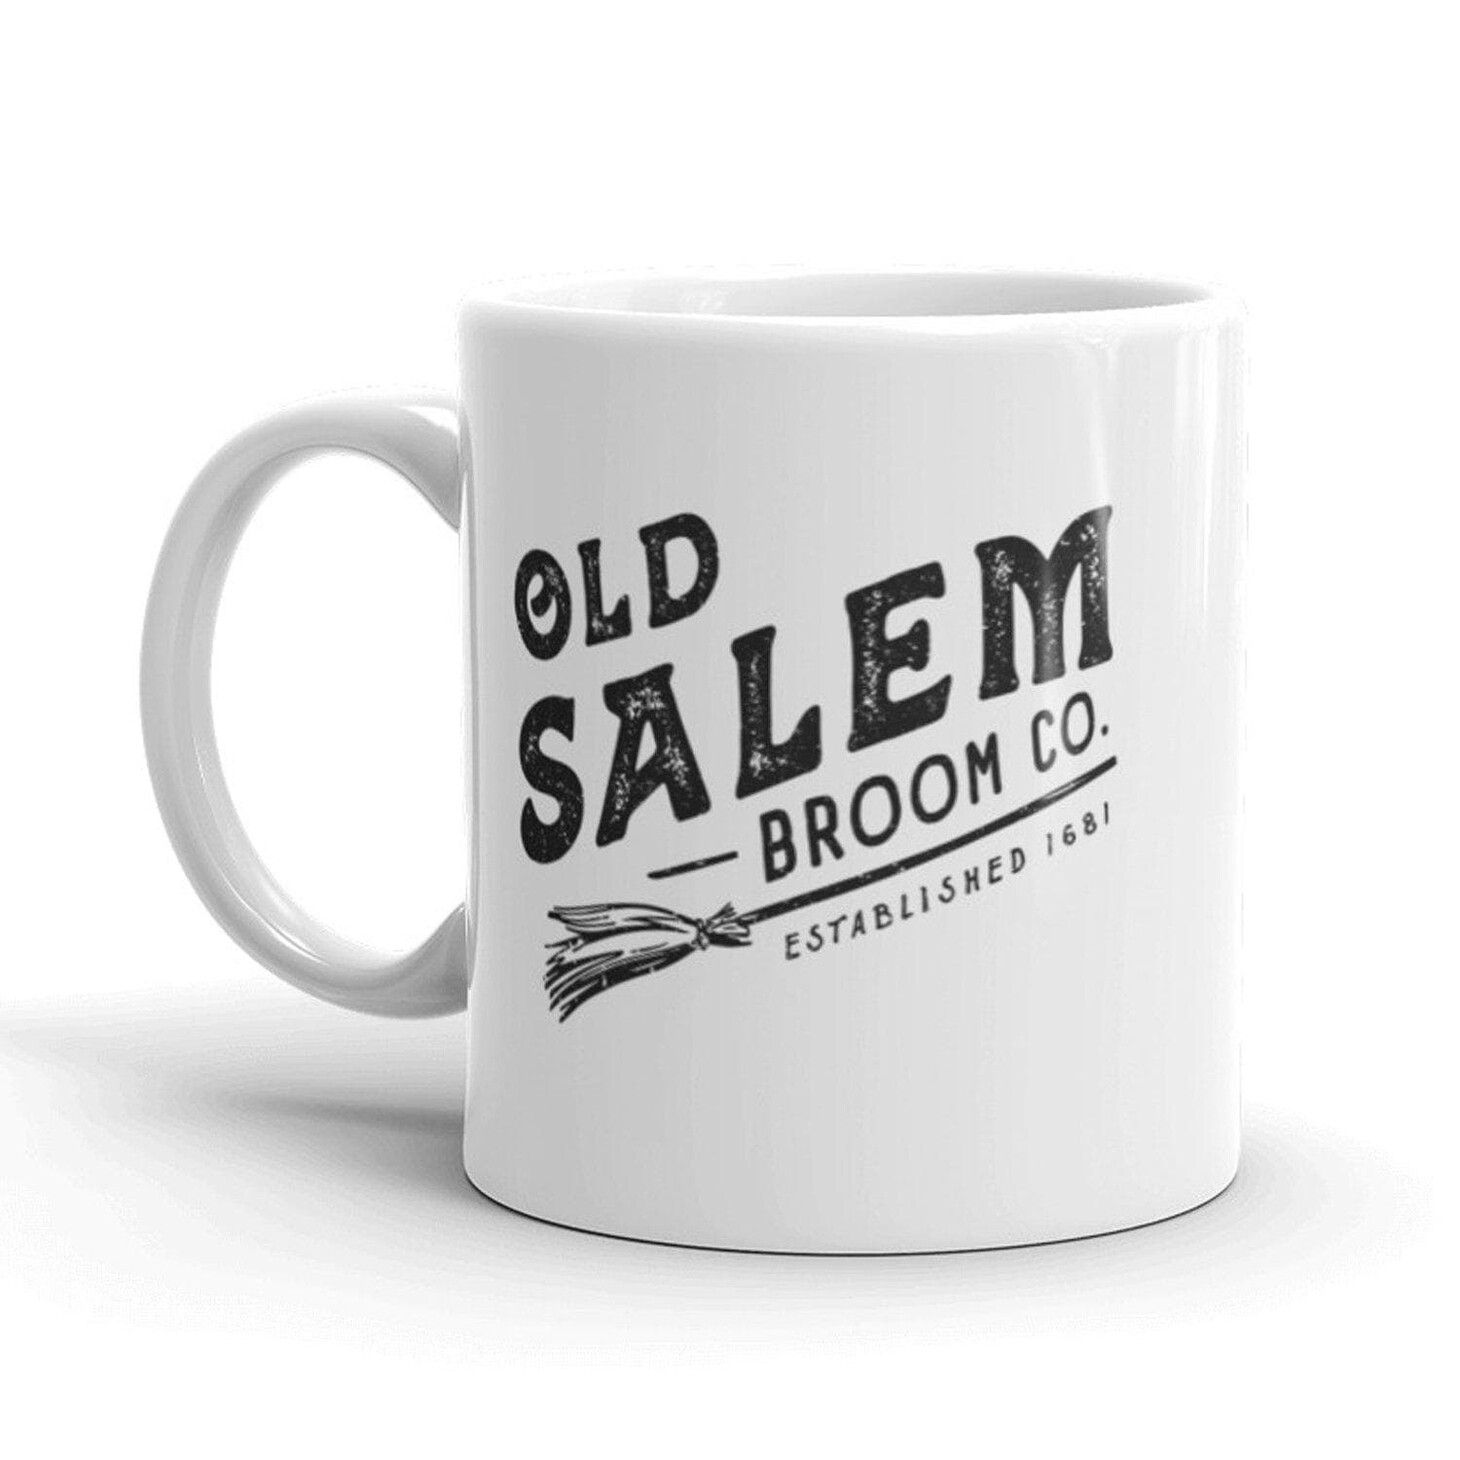 Old Salem Broom Company Mug